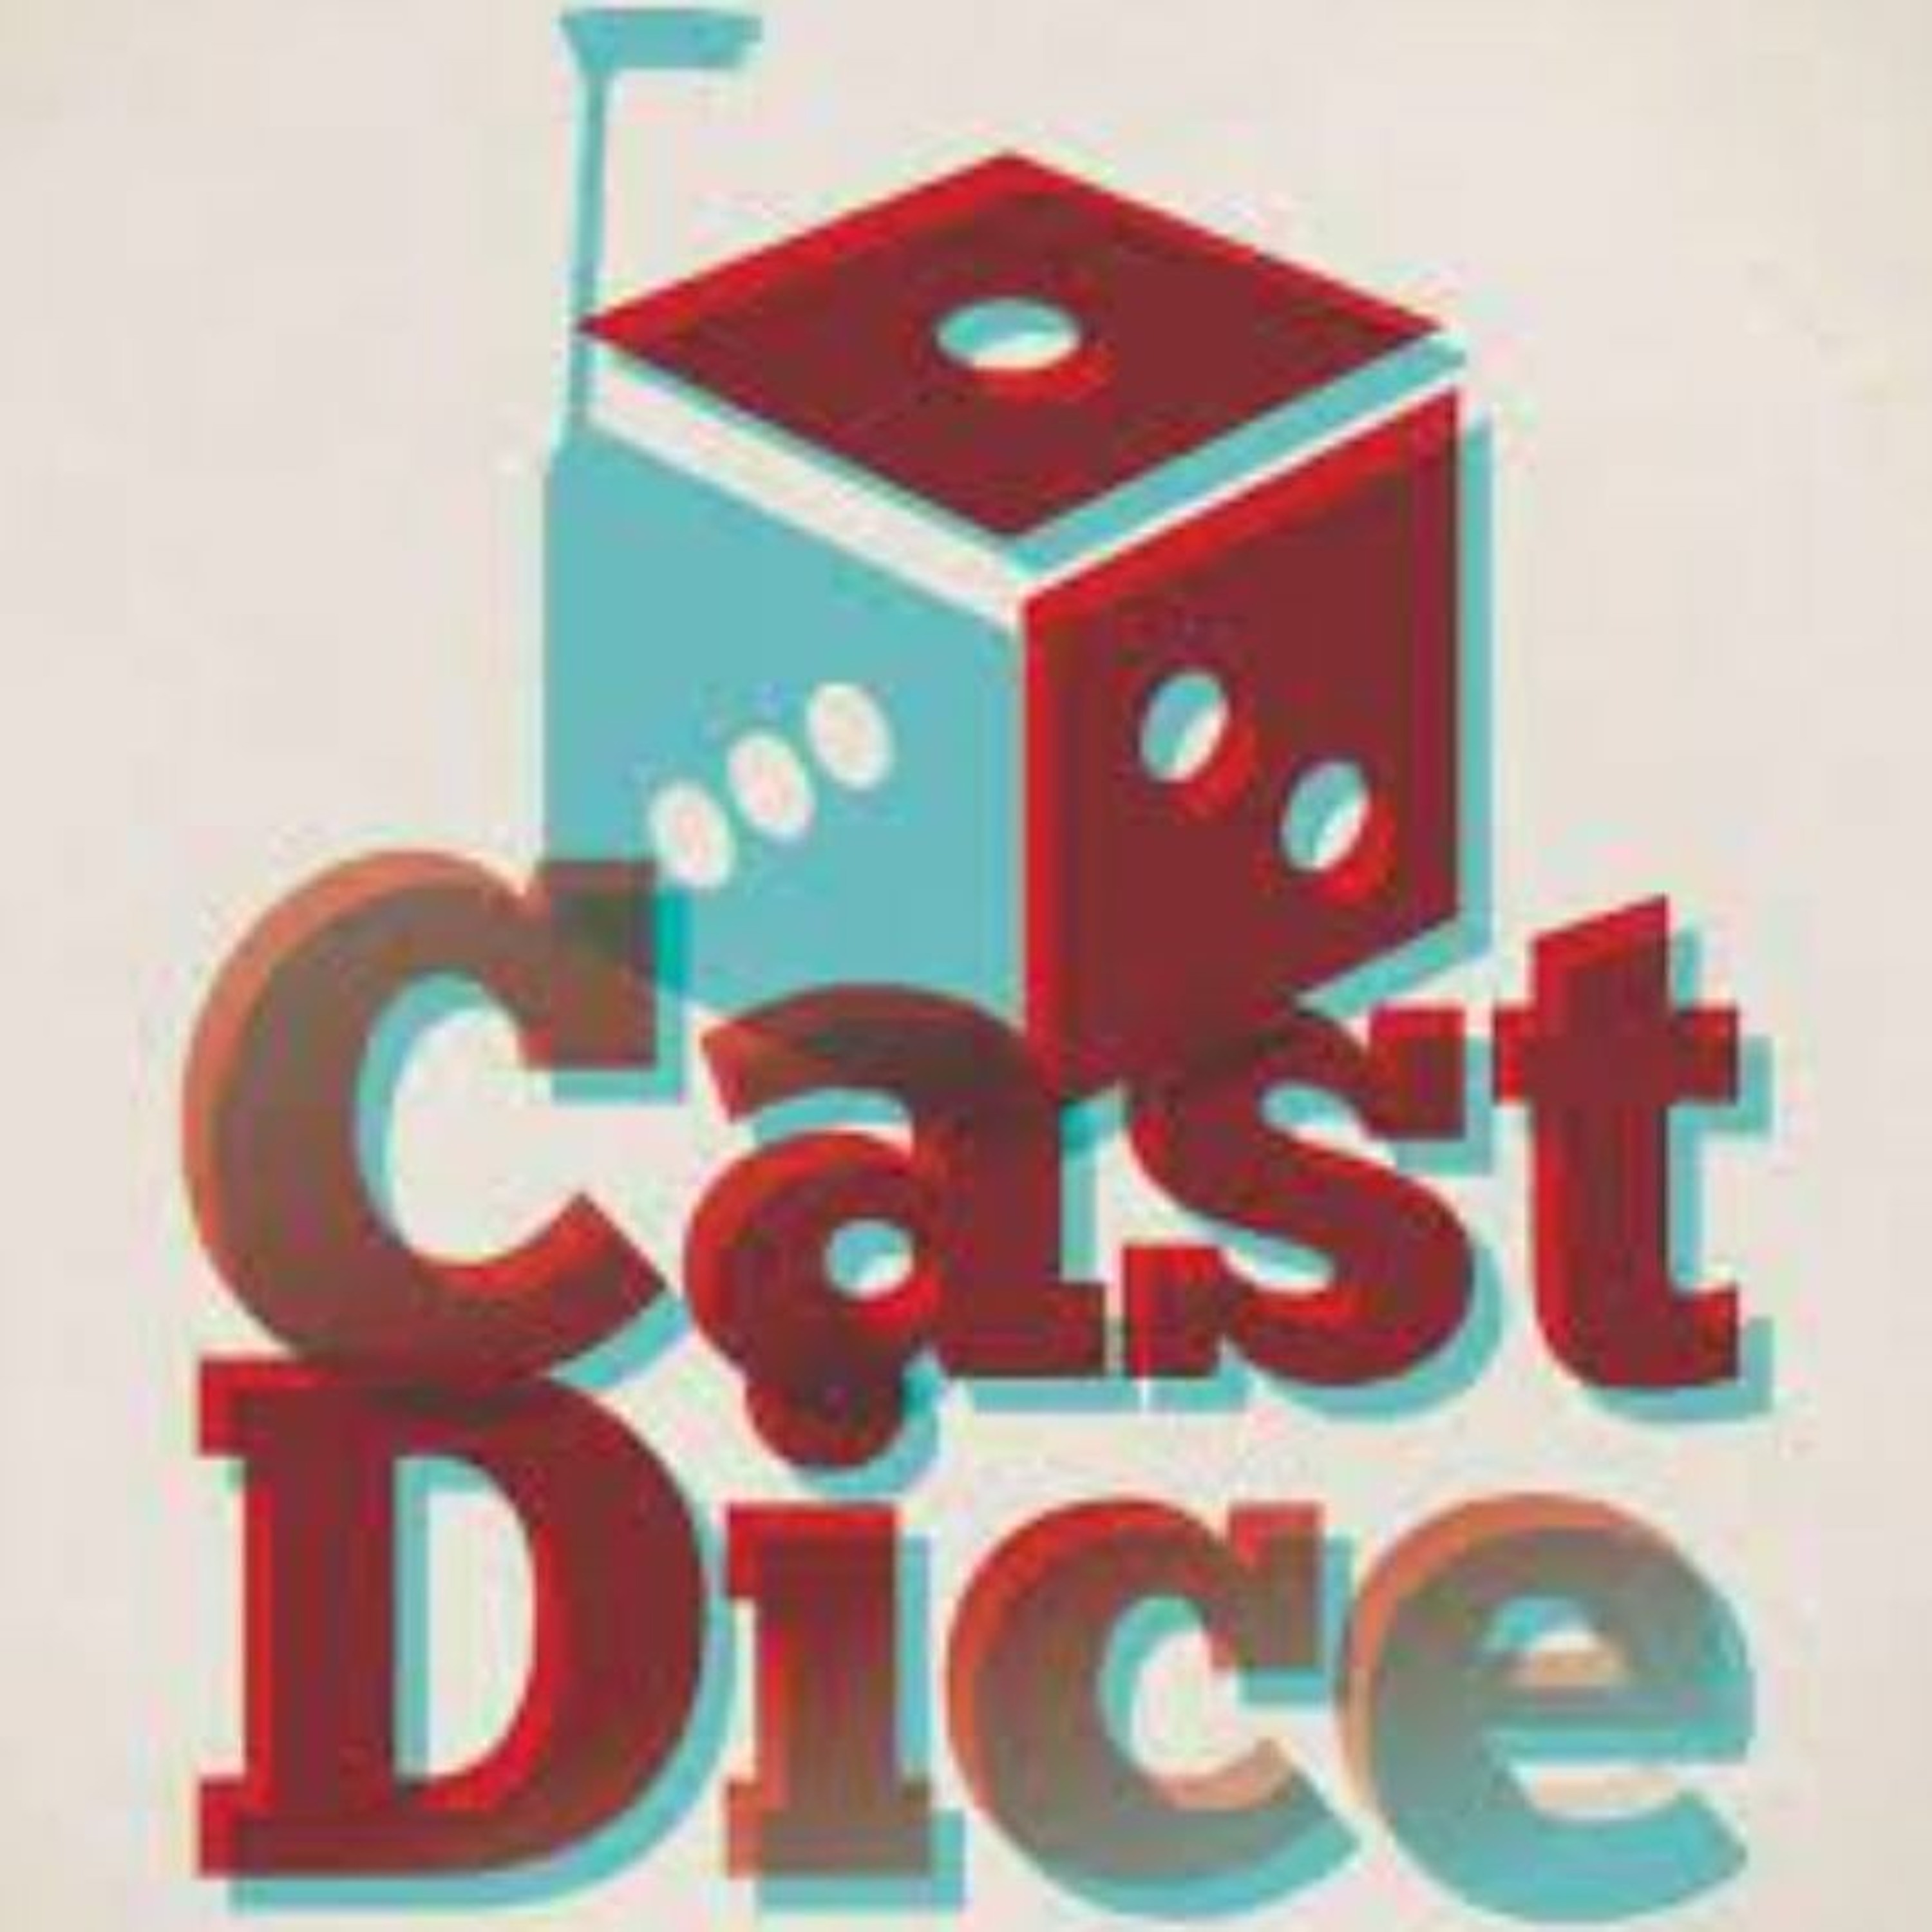 The Cast Dice Podcast - Ep 197 - Beat Em Up